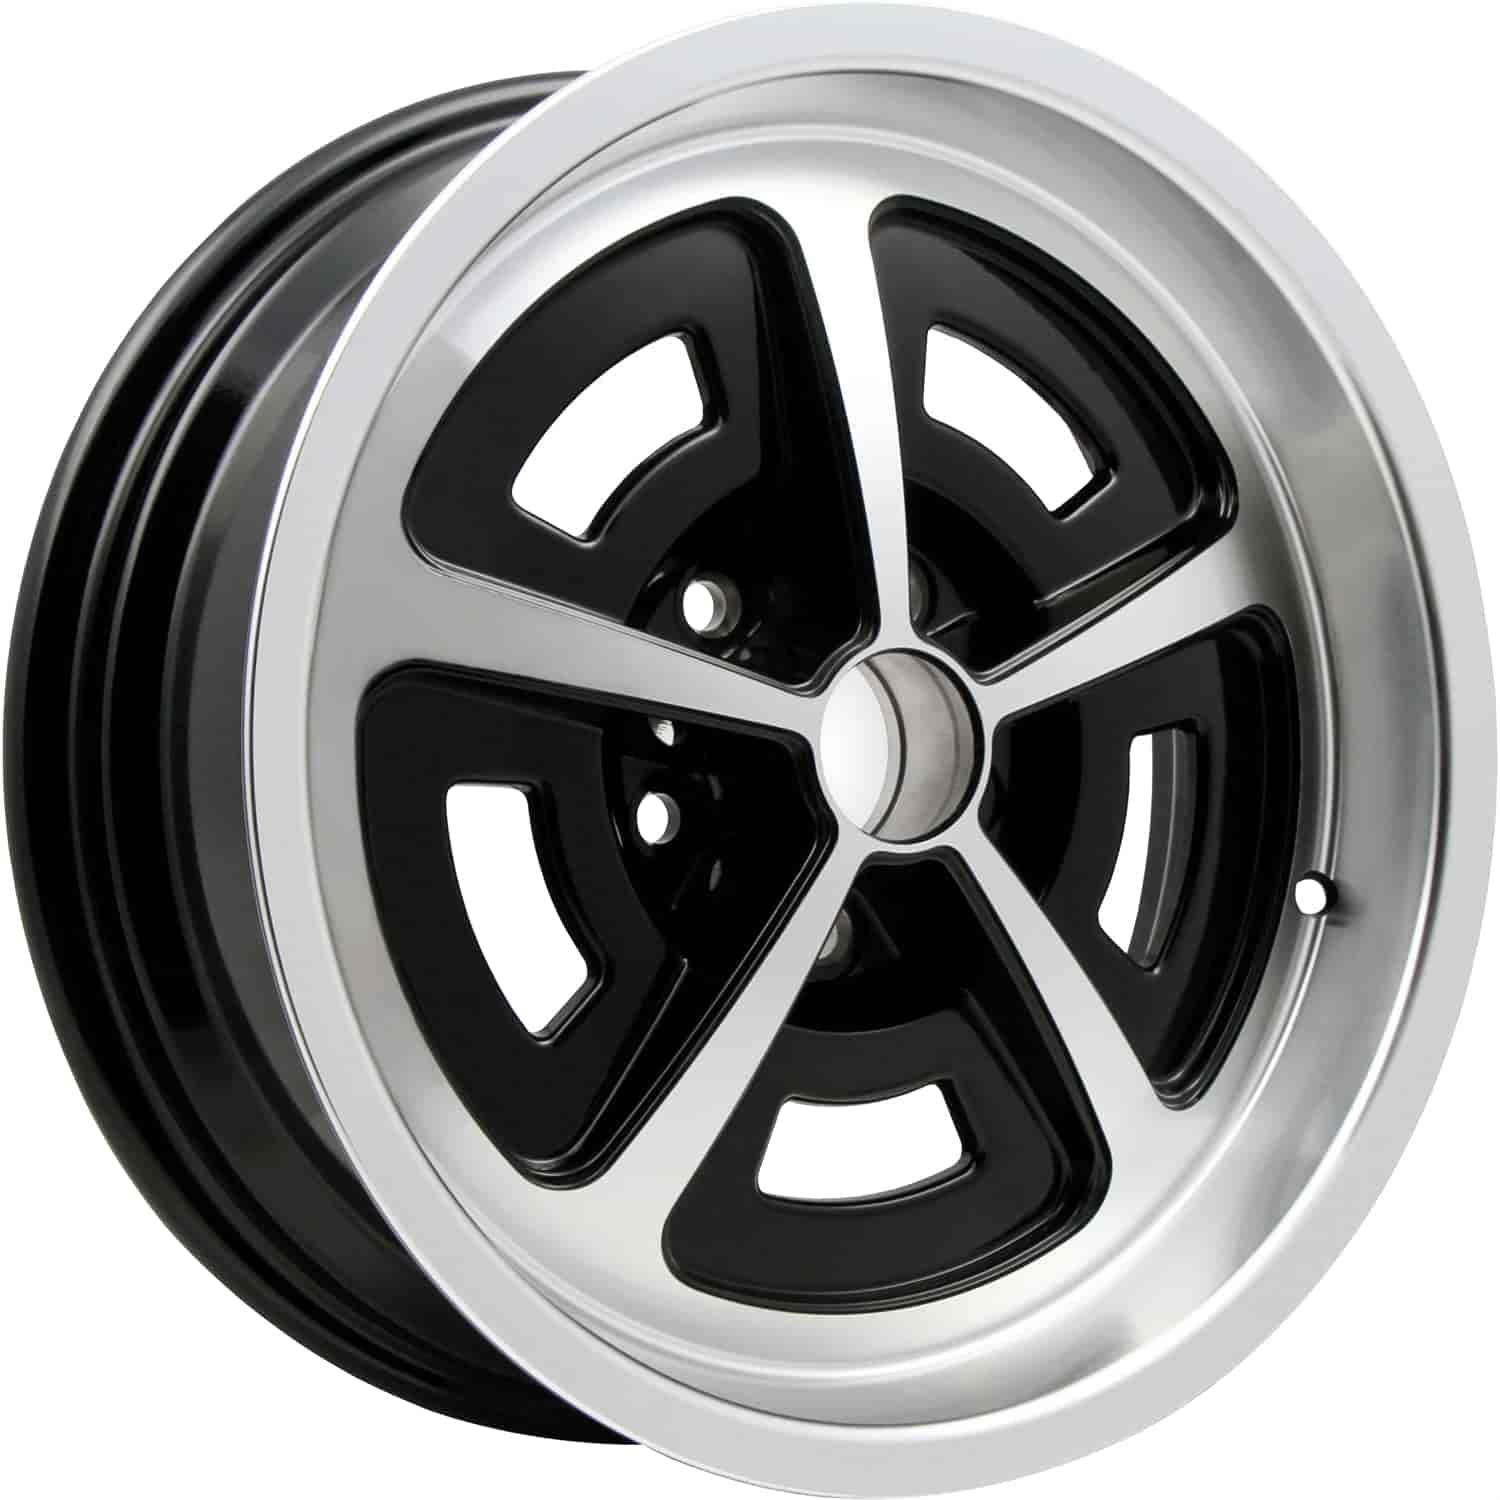 Magnum Aluminum Wheel - Size: 17" x 8"